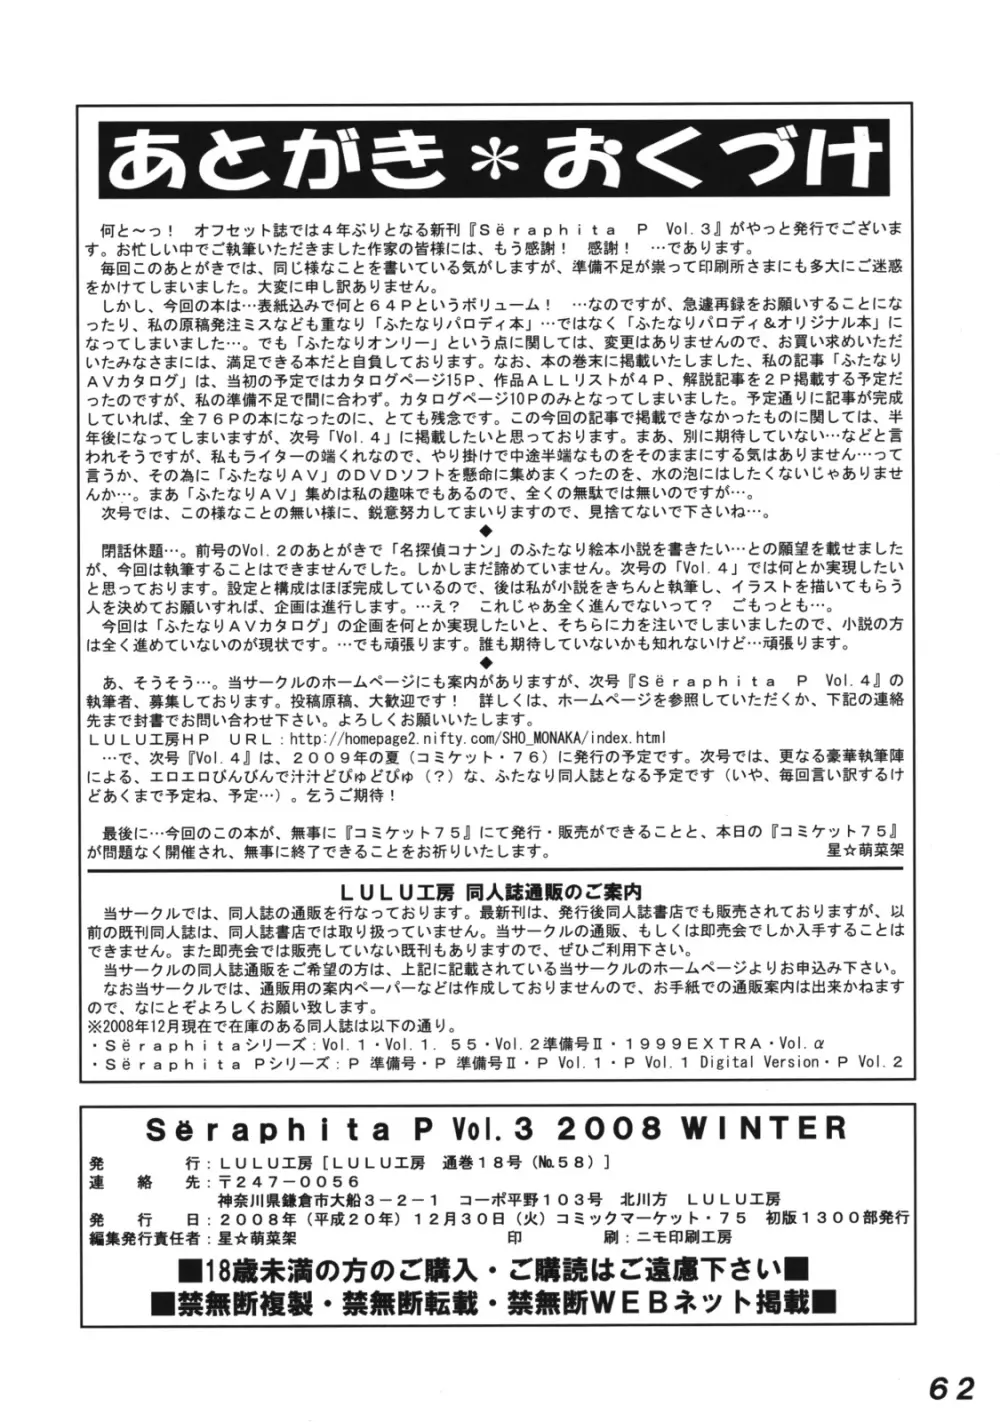 セラフィータ P Vol.3 2008 Winter 61ページ